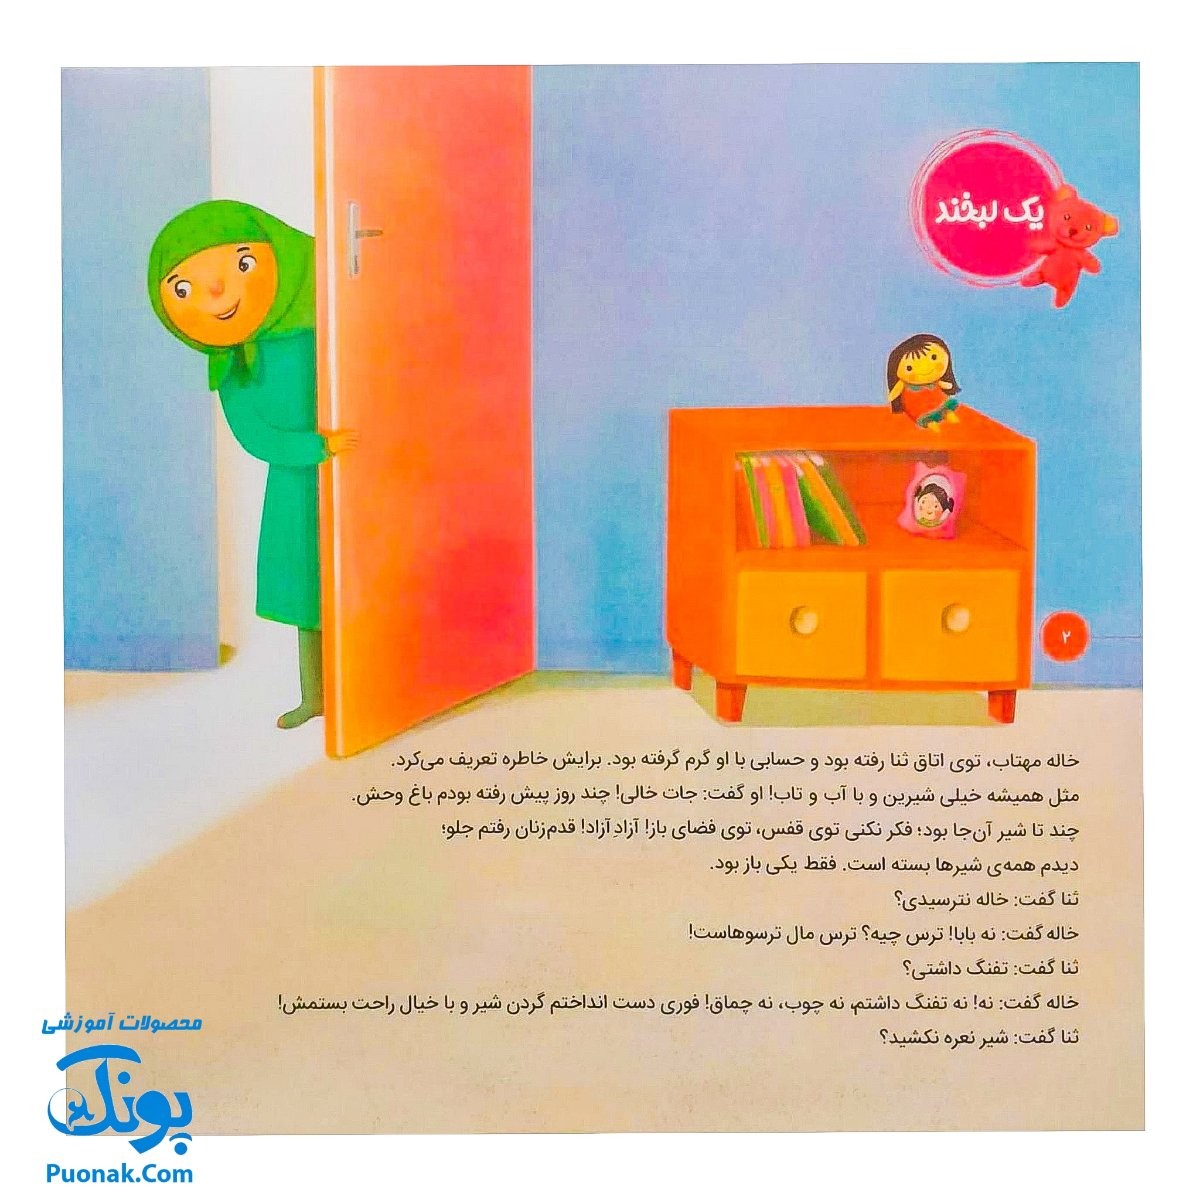 کتاب احکام برای کودکان مشکلات در نماز قصه های سوسن و سینا ۸ (یک لبخند)